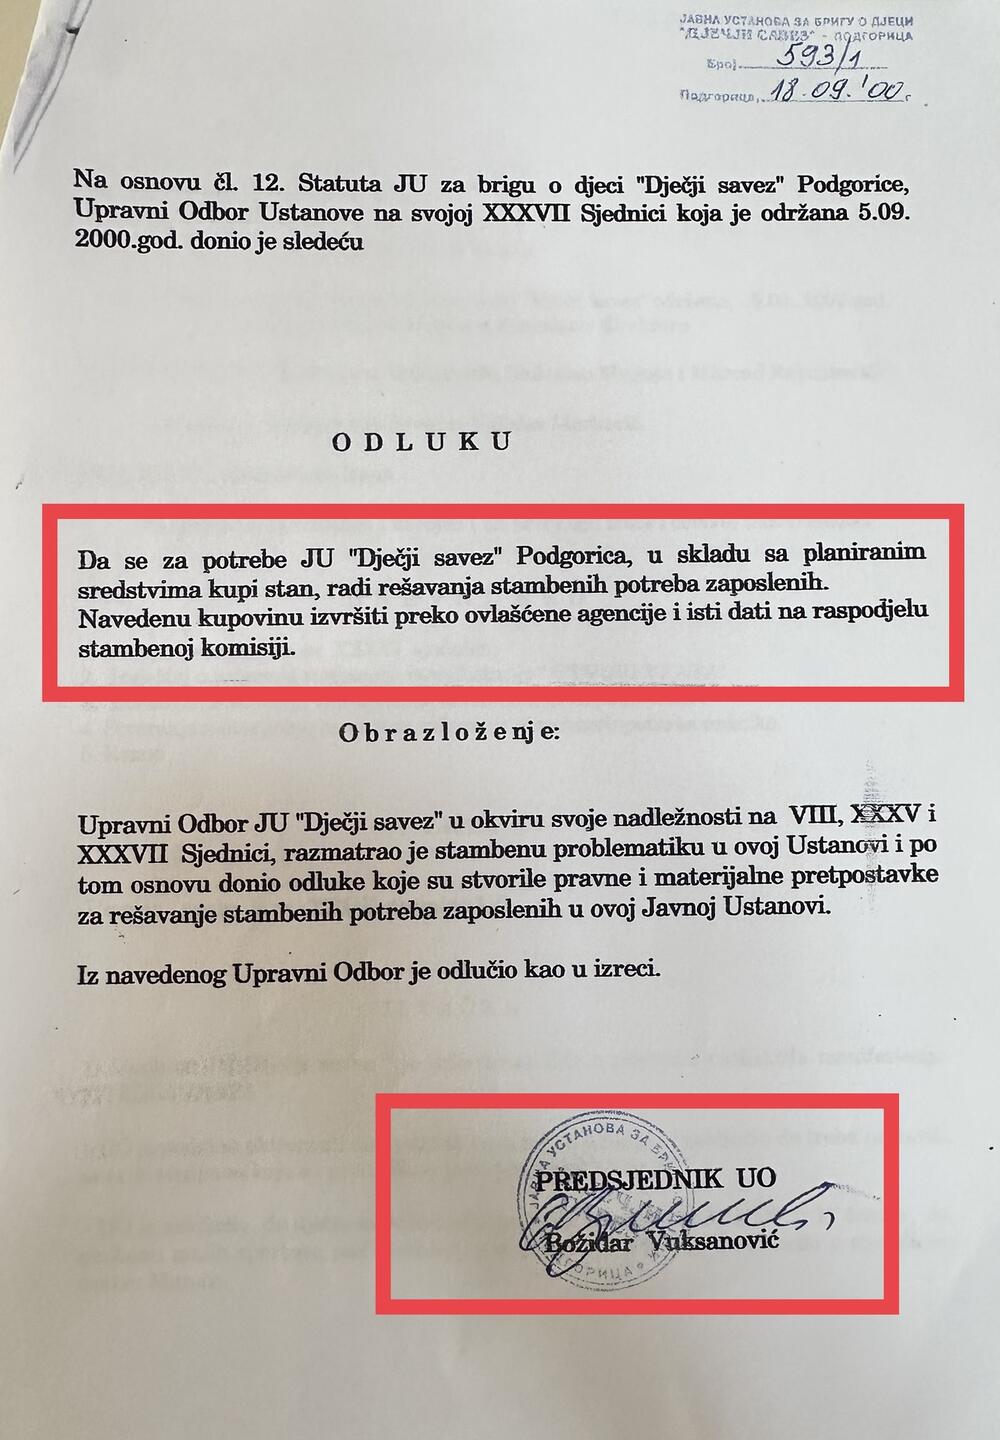 Dokument iz 2000. godine, kada je Marković dobio prvi stan